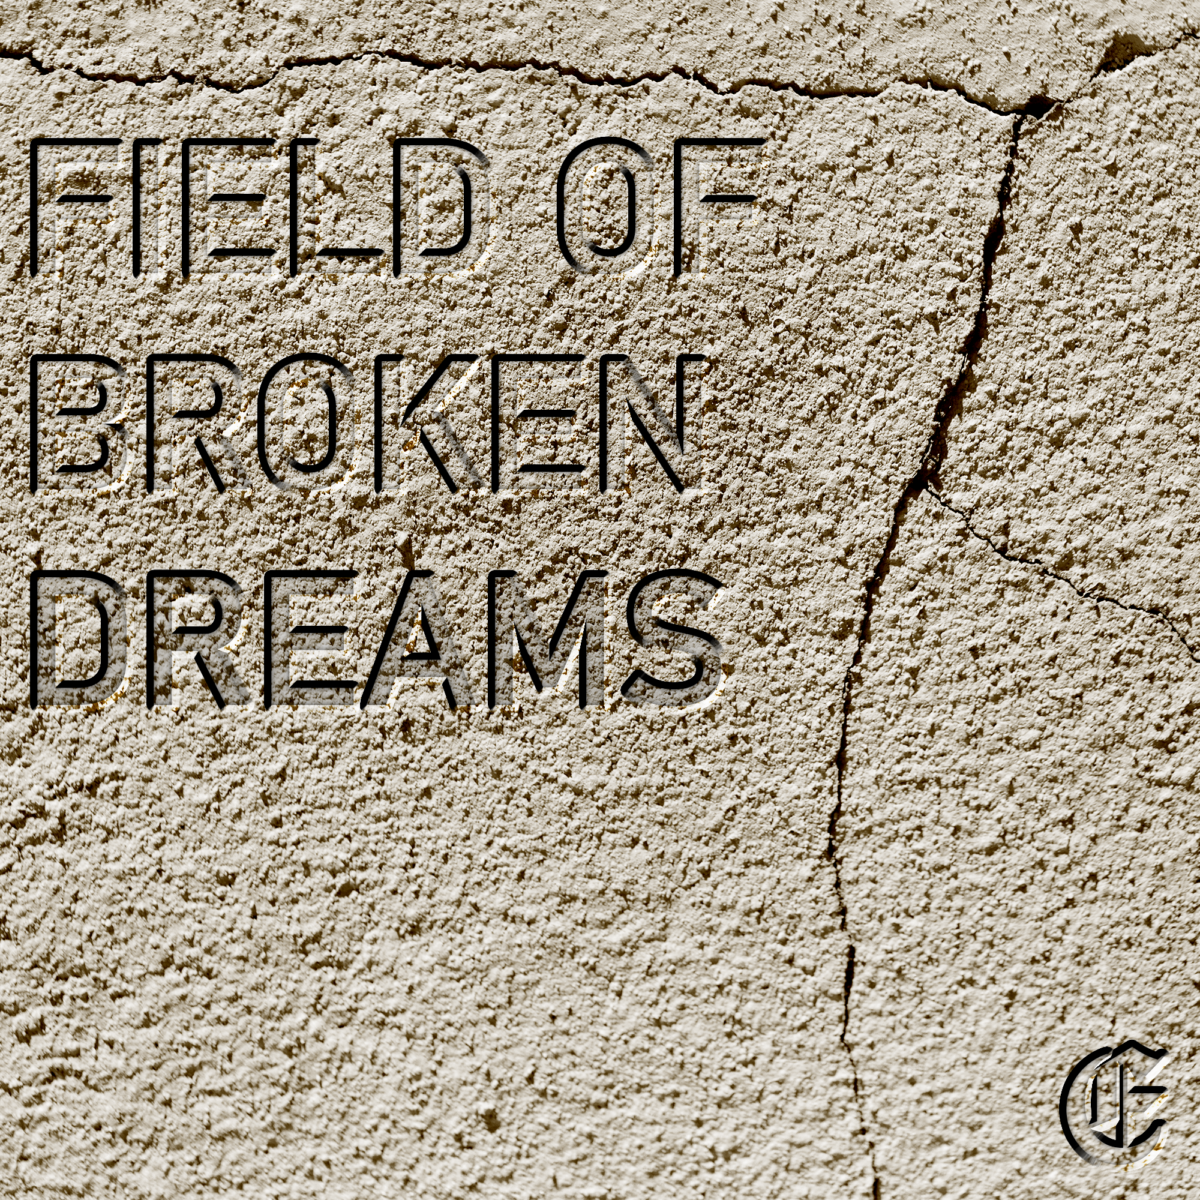 The Field of Broken Dreams | Episode 1: The Beginning